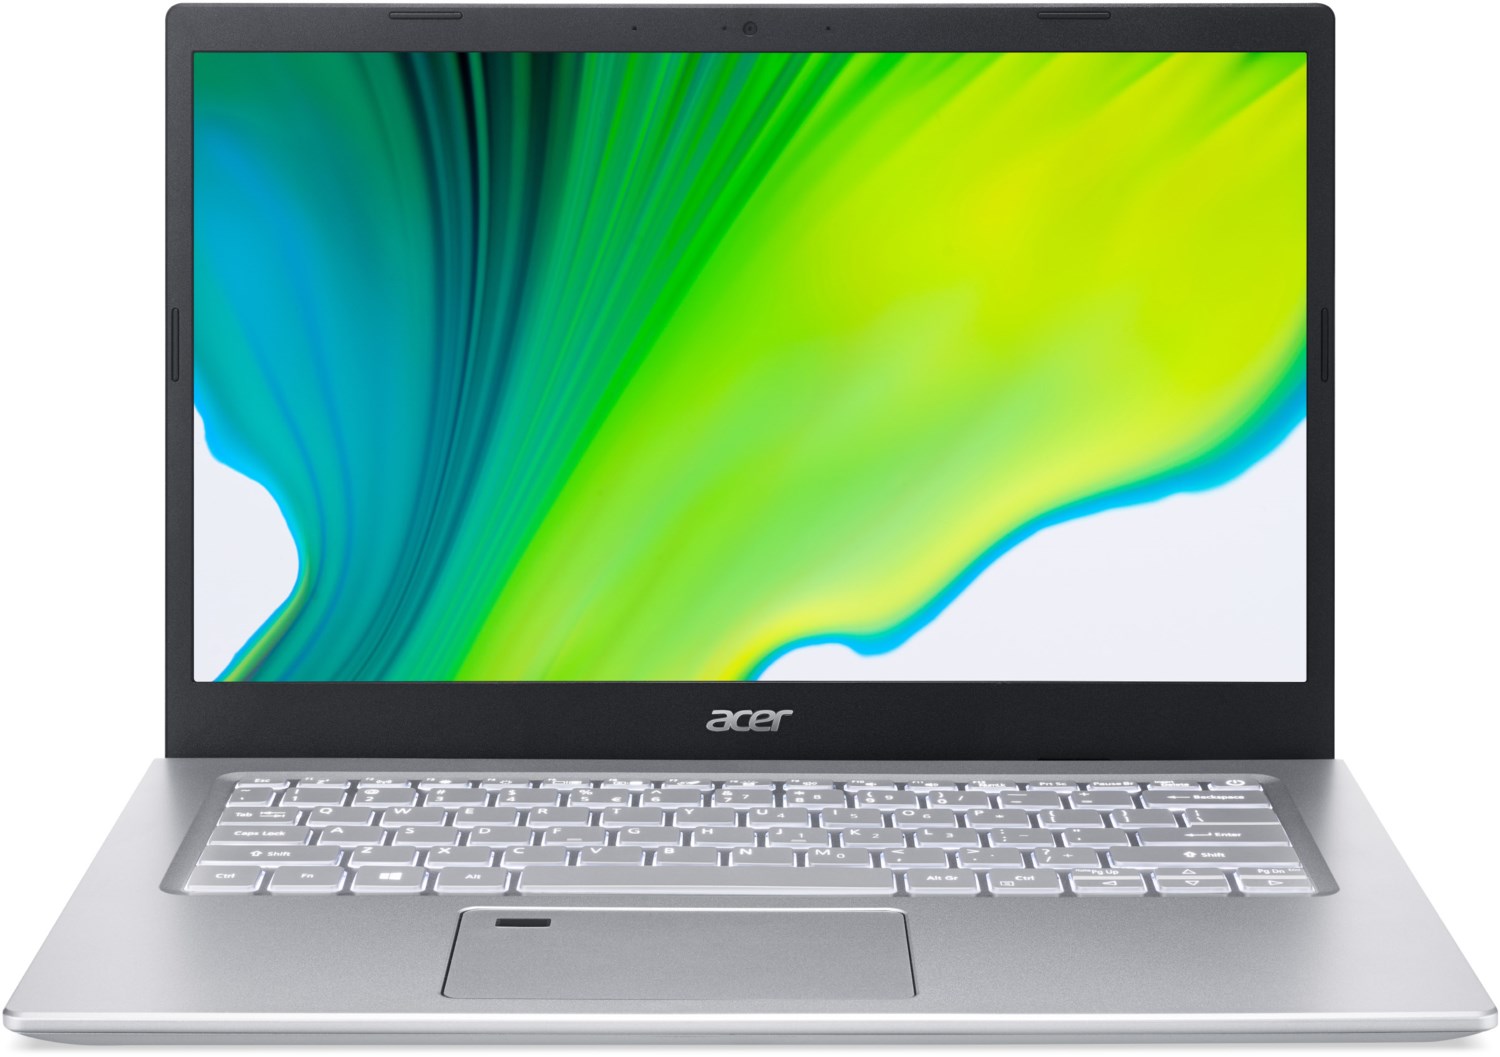 Acer Aspire 5 (A514 54 55RE) 35,56 cm (14 ) Notebook schwarz silber  - Onlineshop EURONICS